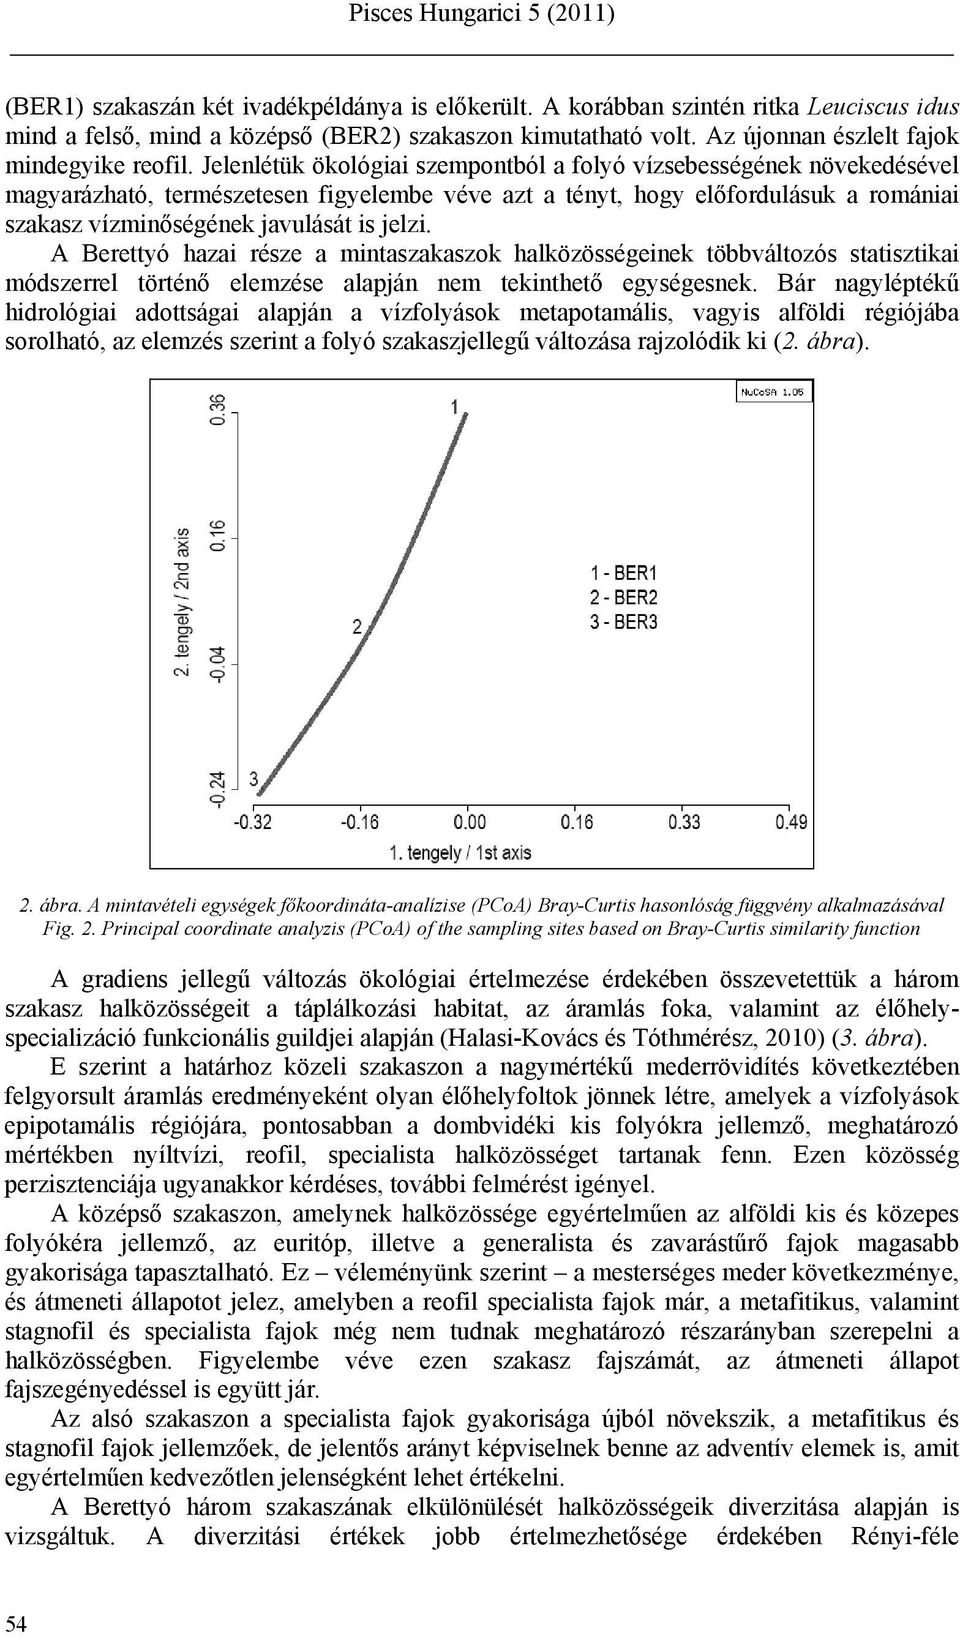 A Berettyó hazai része a mintaszakaszok halközösségeinek többváltozós statisztikai módszerrel történő elemzése alapján nem tekinthető egységesnek.